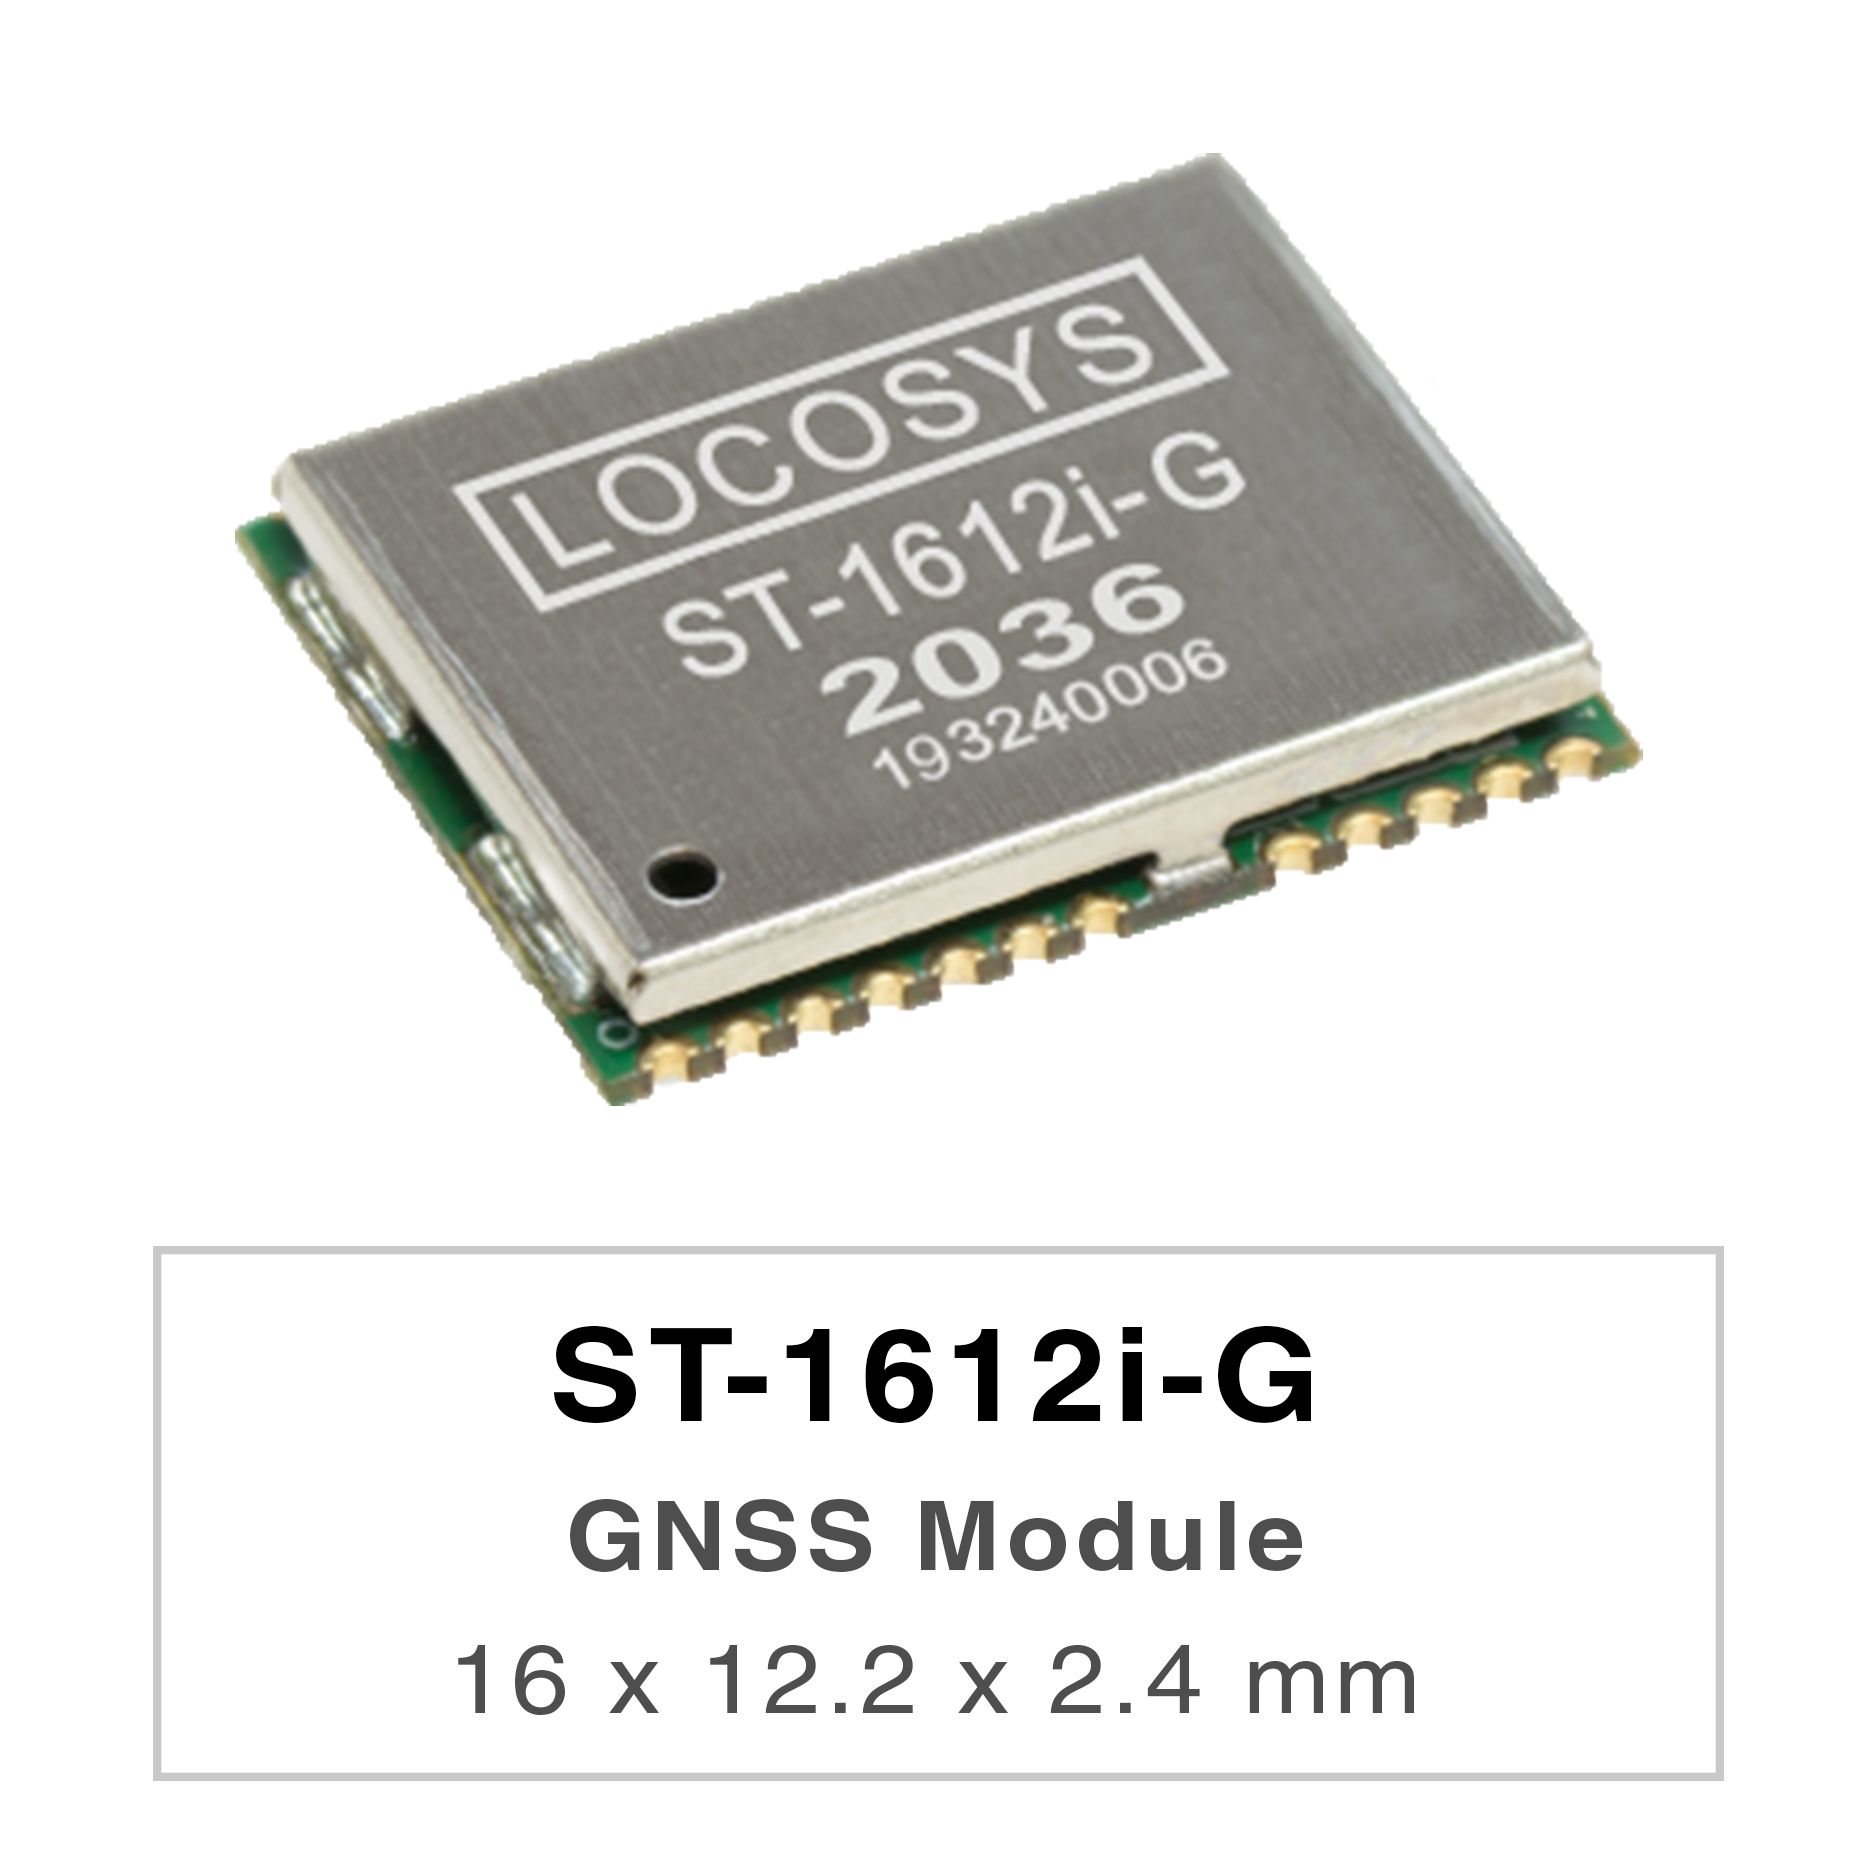 Das Modul LOCOSYS ST-1612i-G kann gleichzeitig mehrere Satellitenkonstellationen erfassen und verfolgen,
     <br />darunter GPS, GLONASS, GALILEO und QZSS.